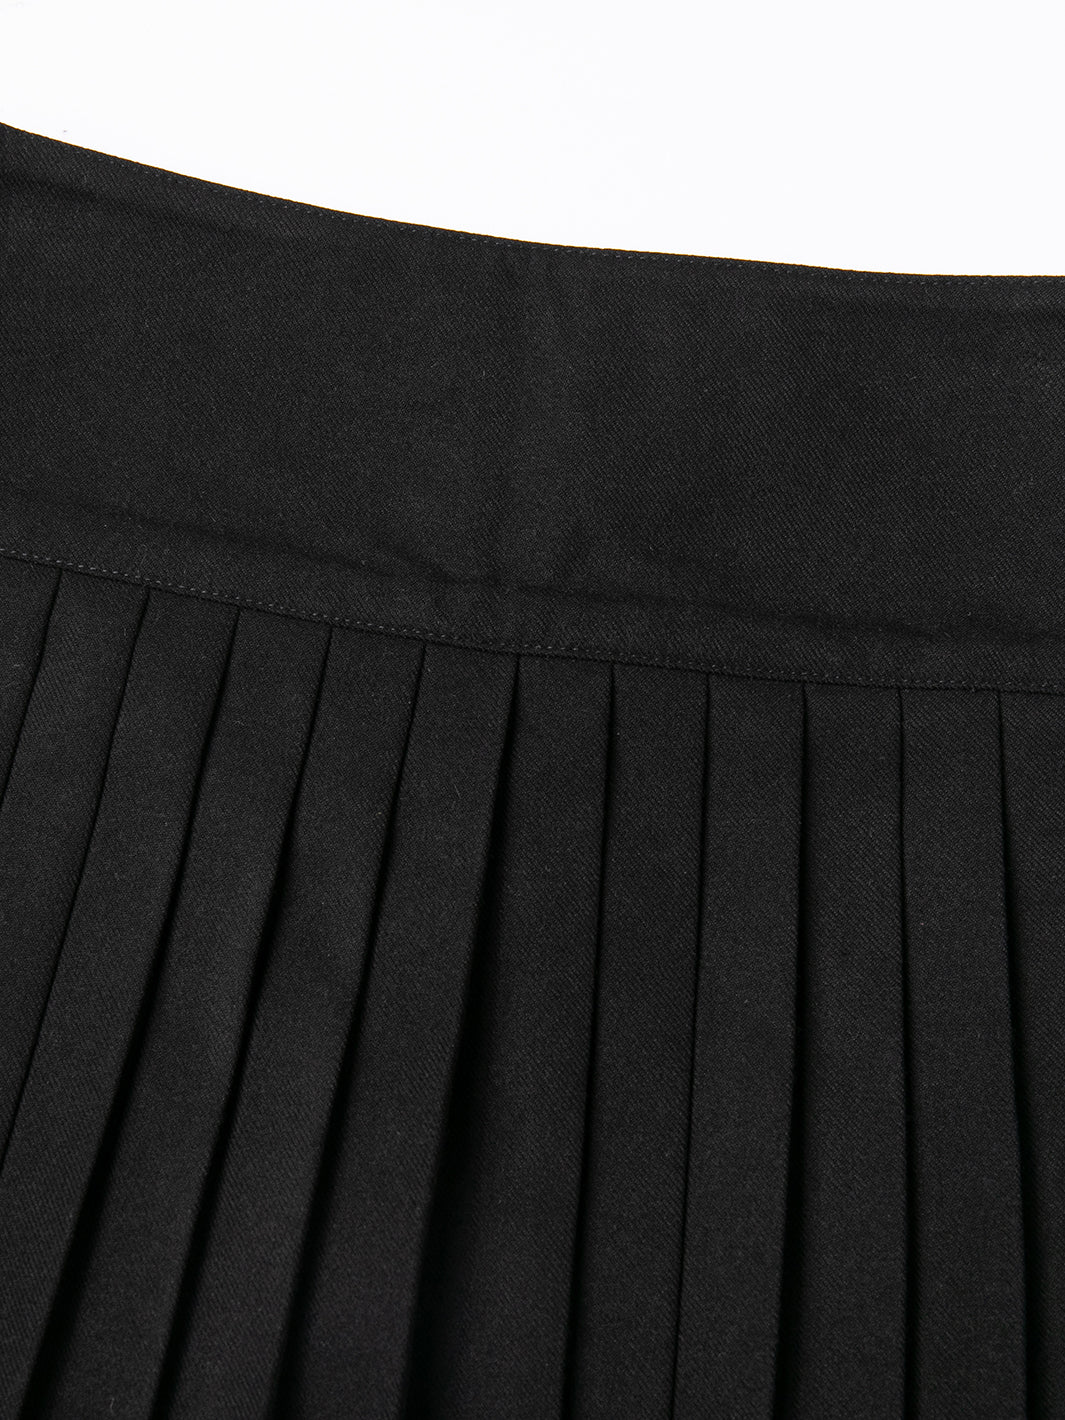 Knife Pleats Ribbon Skirt - Black